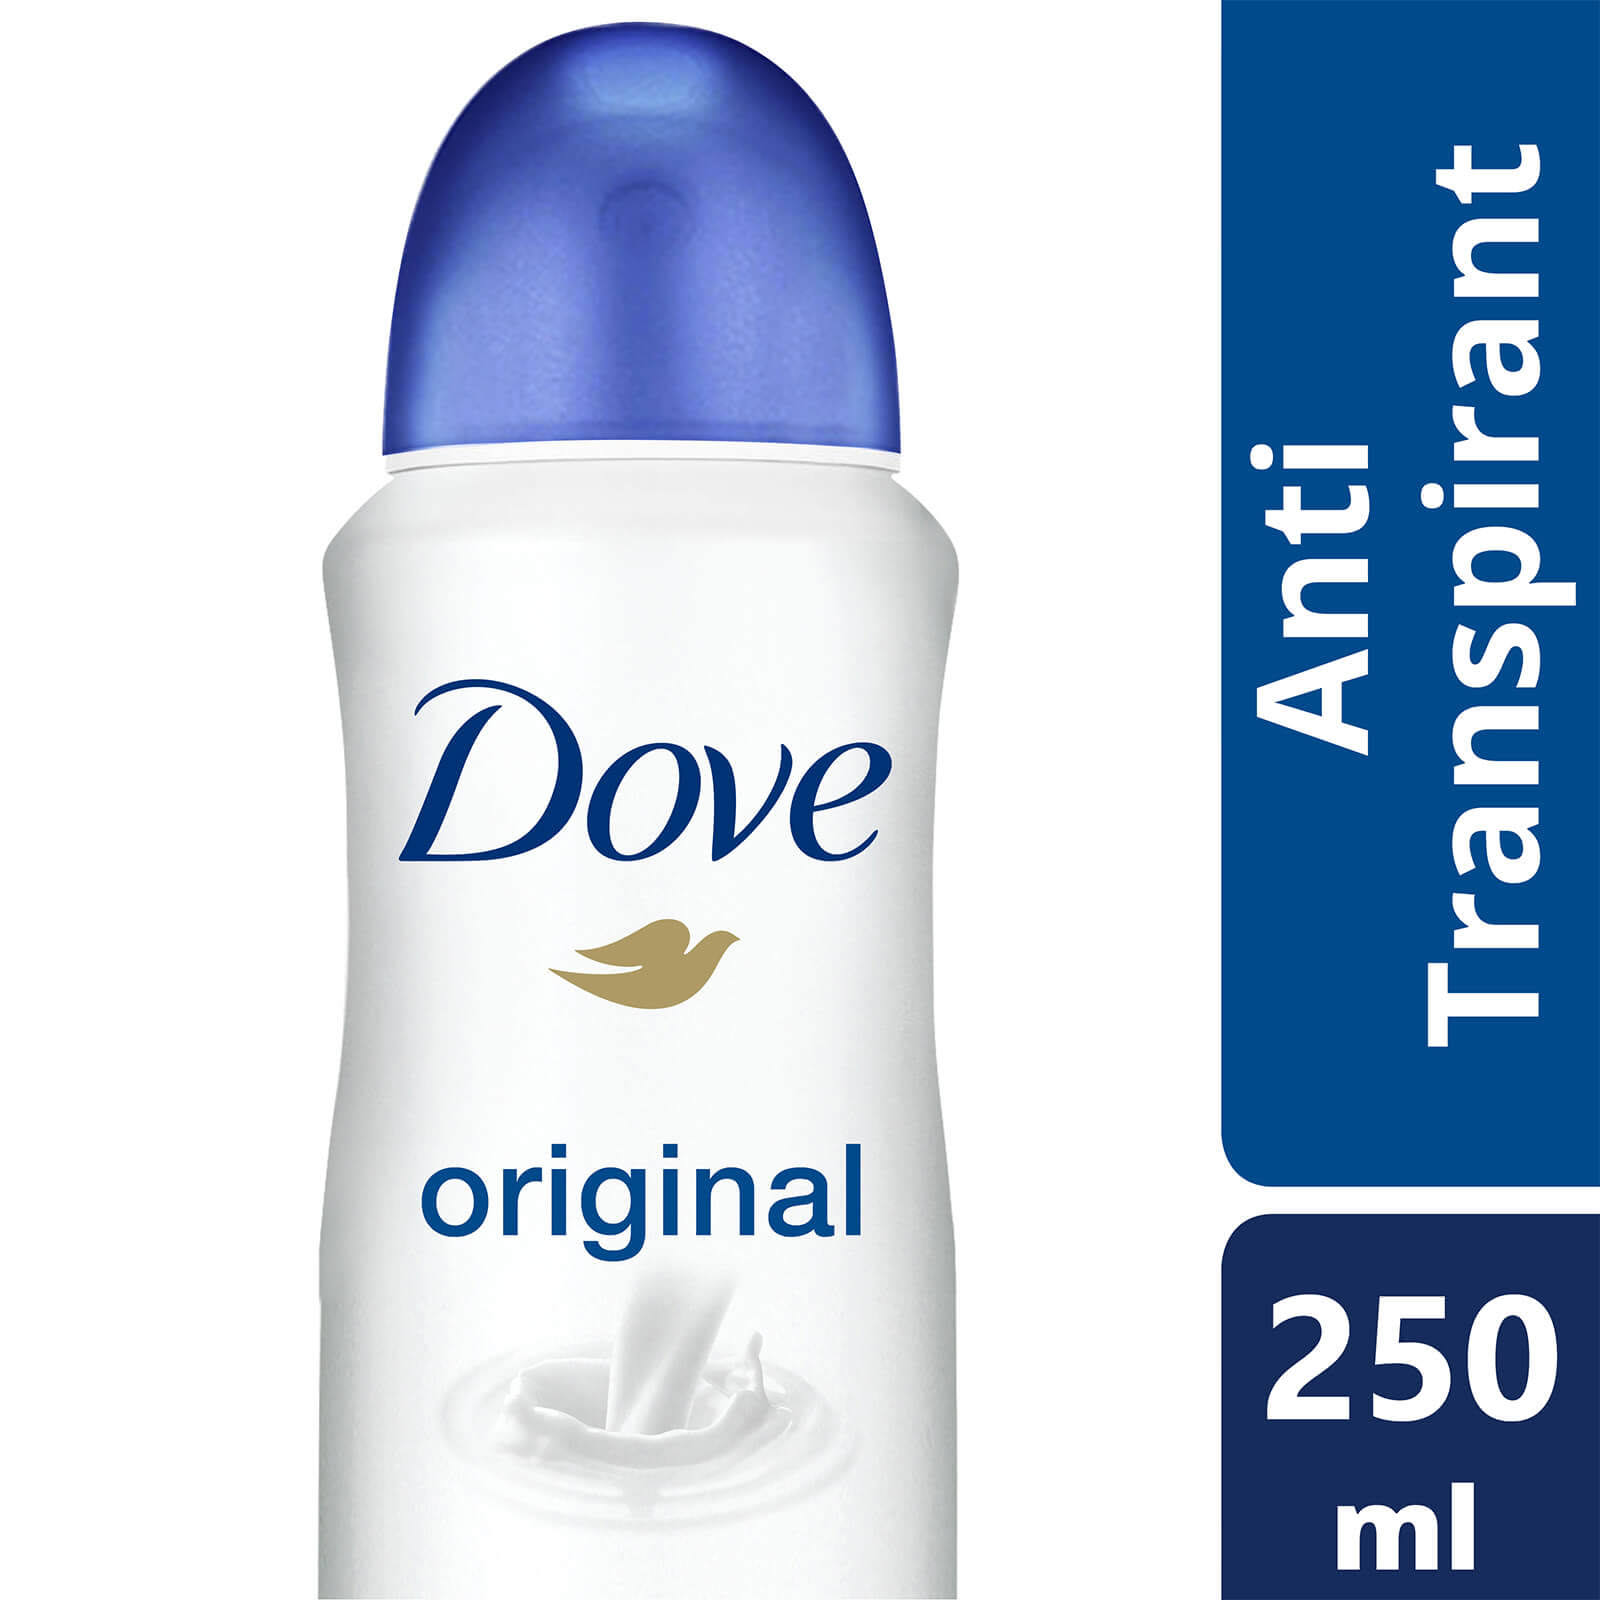 Dove Original Anti-Perspirant Deodorant 250ml